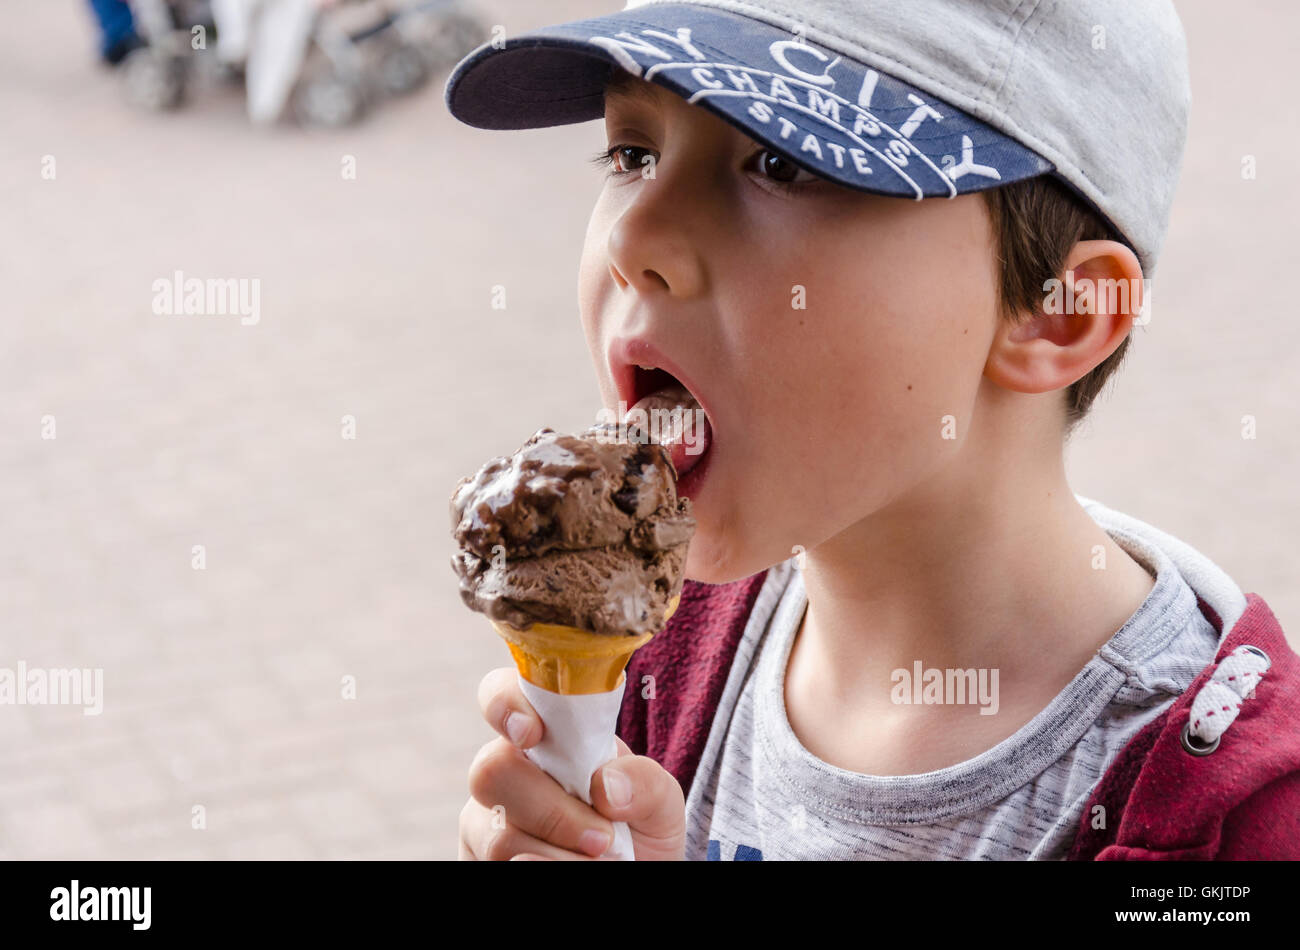 A young boy enjoys a chocolate ice cream. Stock Photo